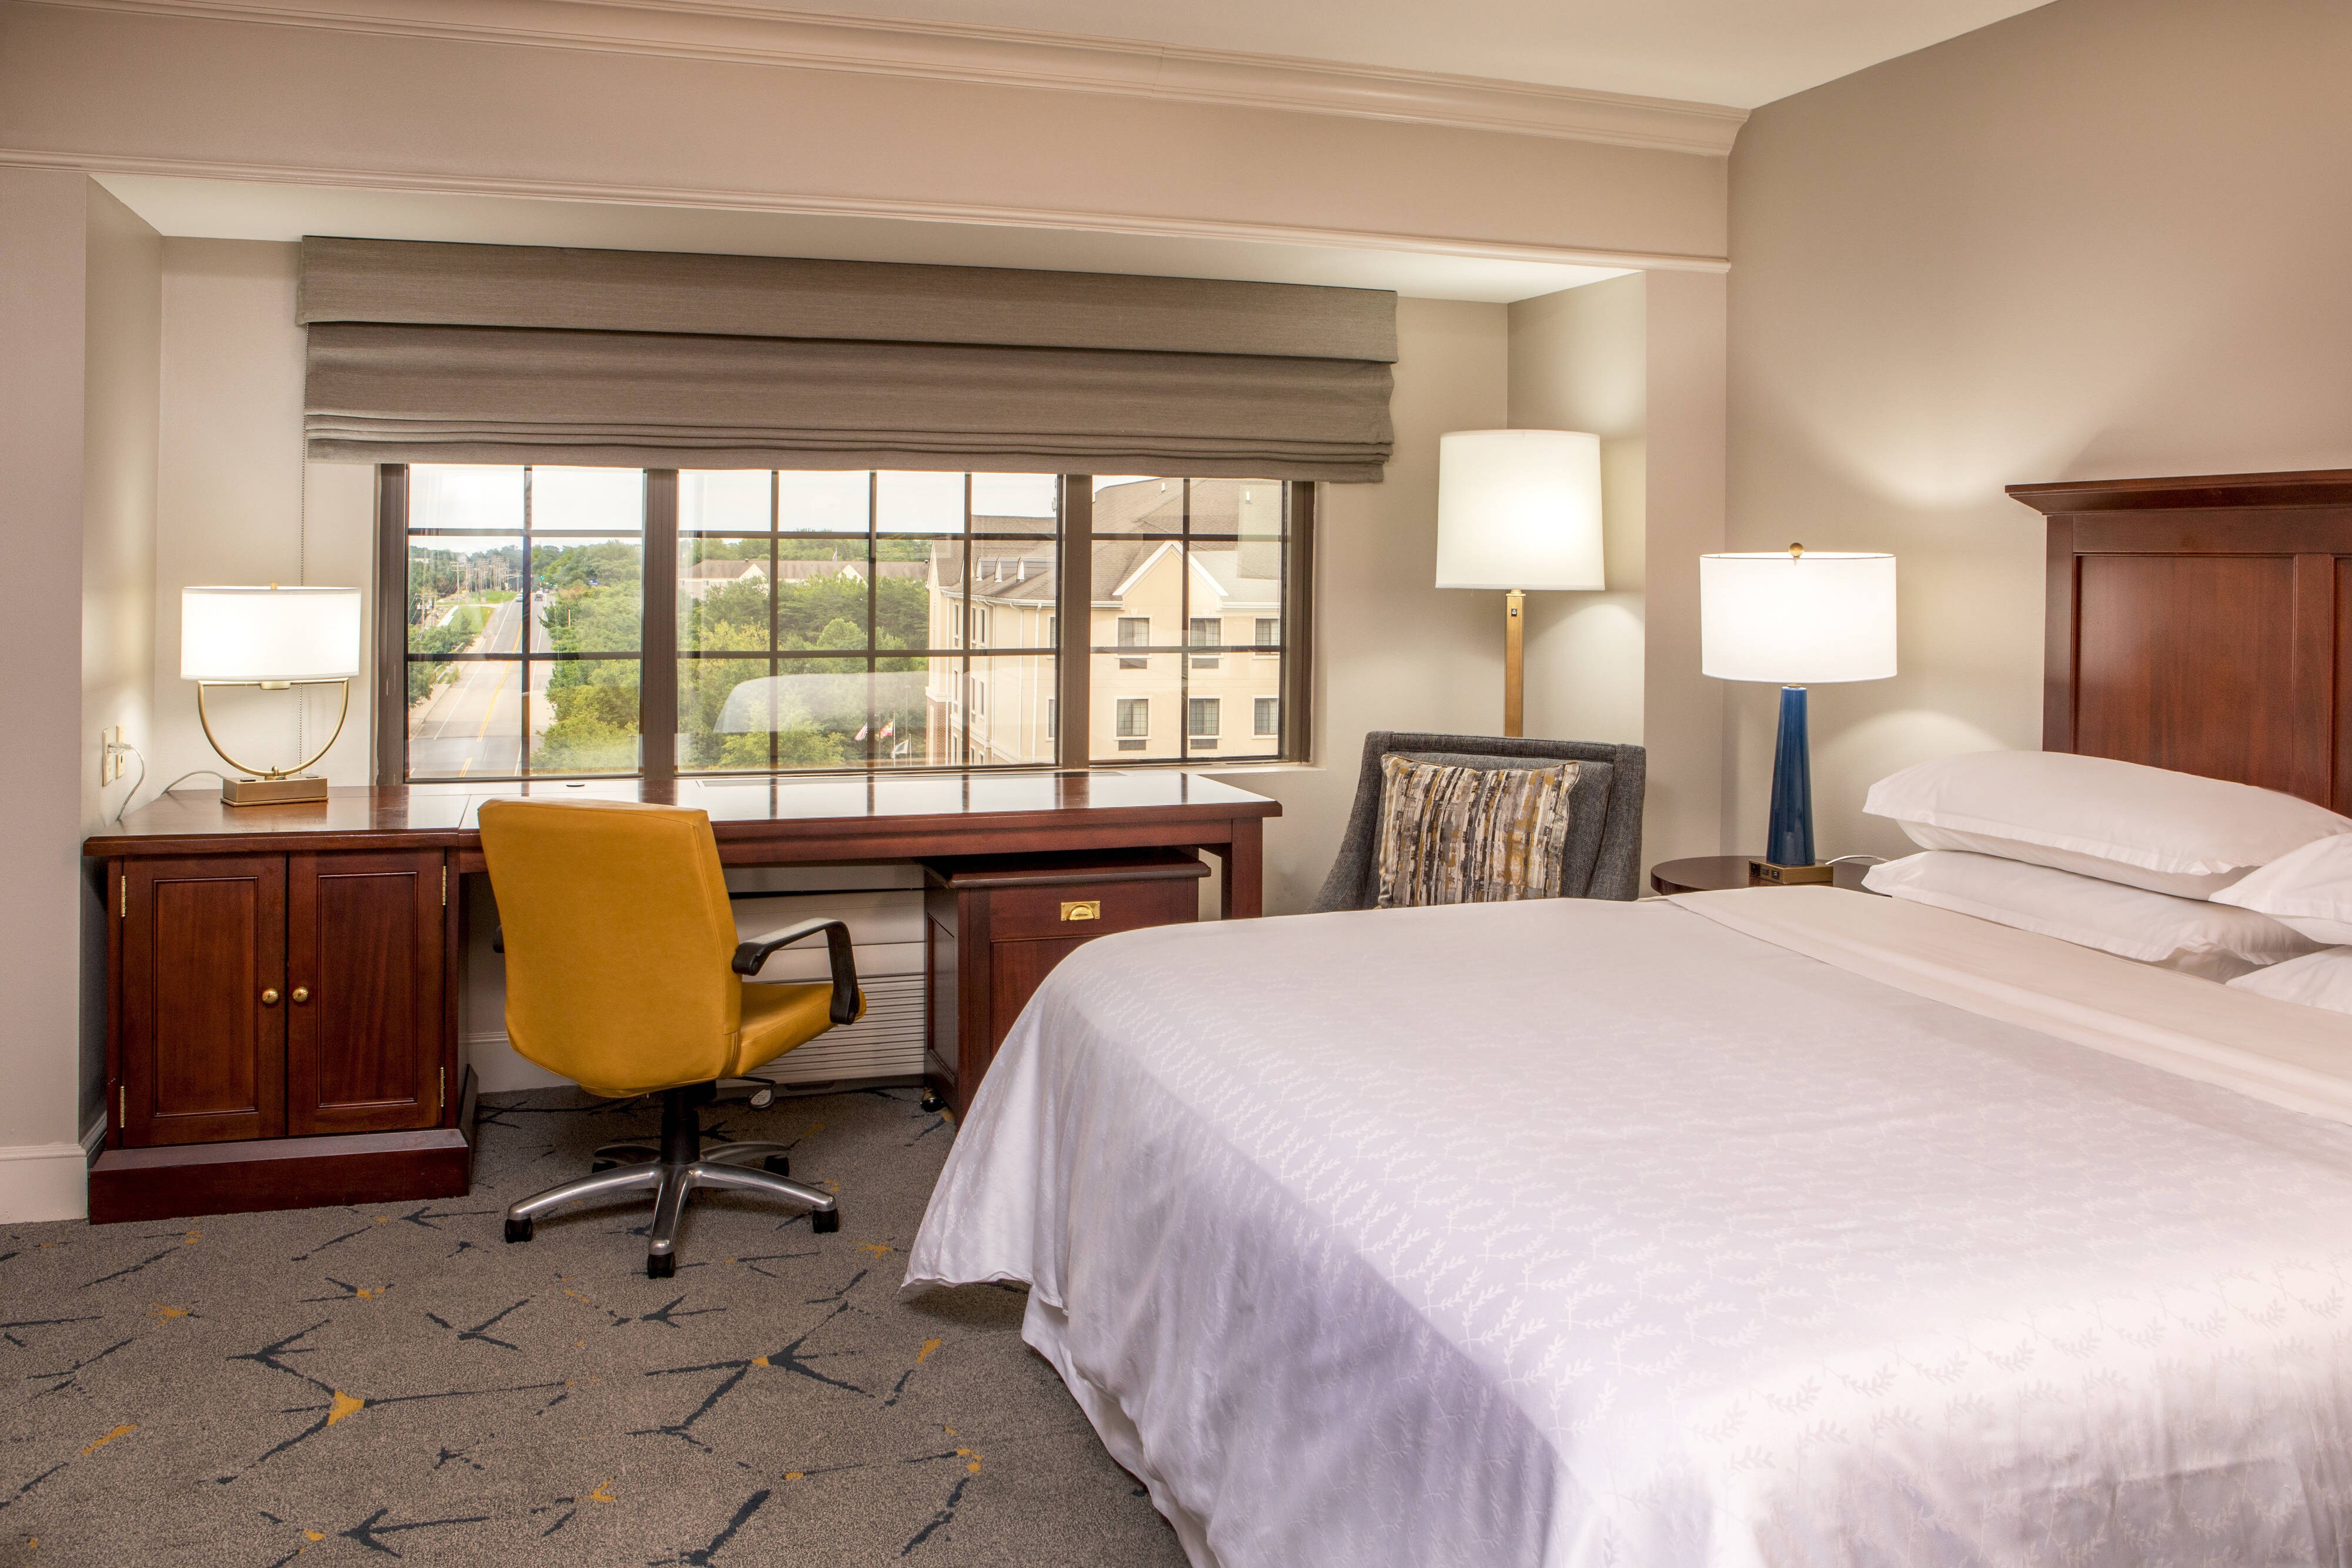 Fairfield Inn & Suites by Marriott Seattle Bellevue/Redmond | 14595 NE 29th Place, Bellevue, WA, 98007 | +1 (425) 869-6548